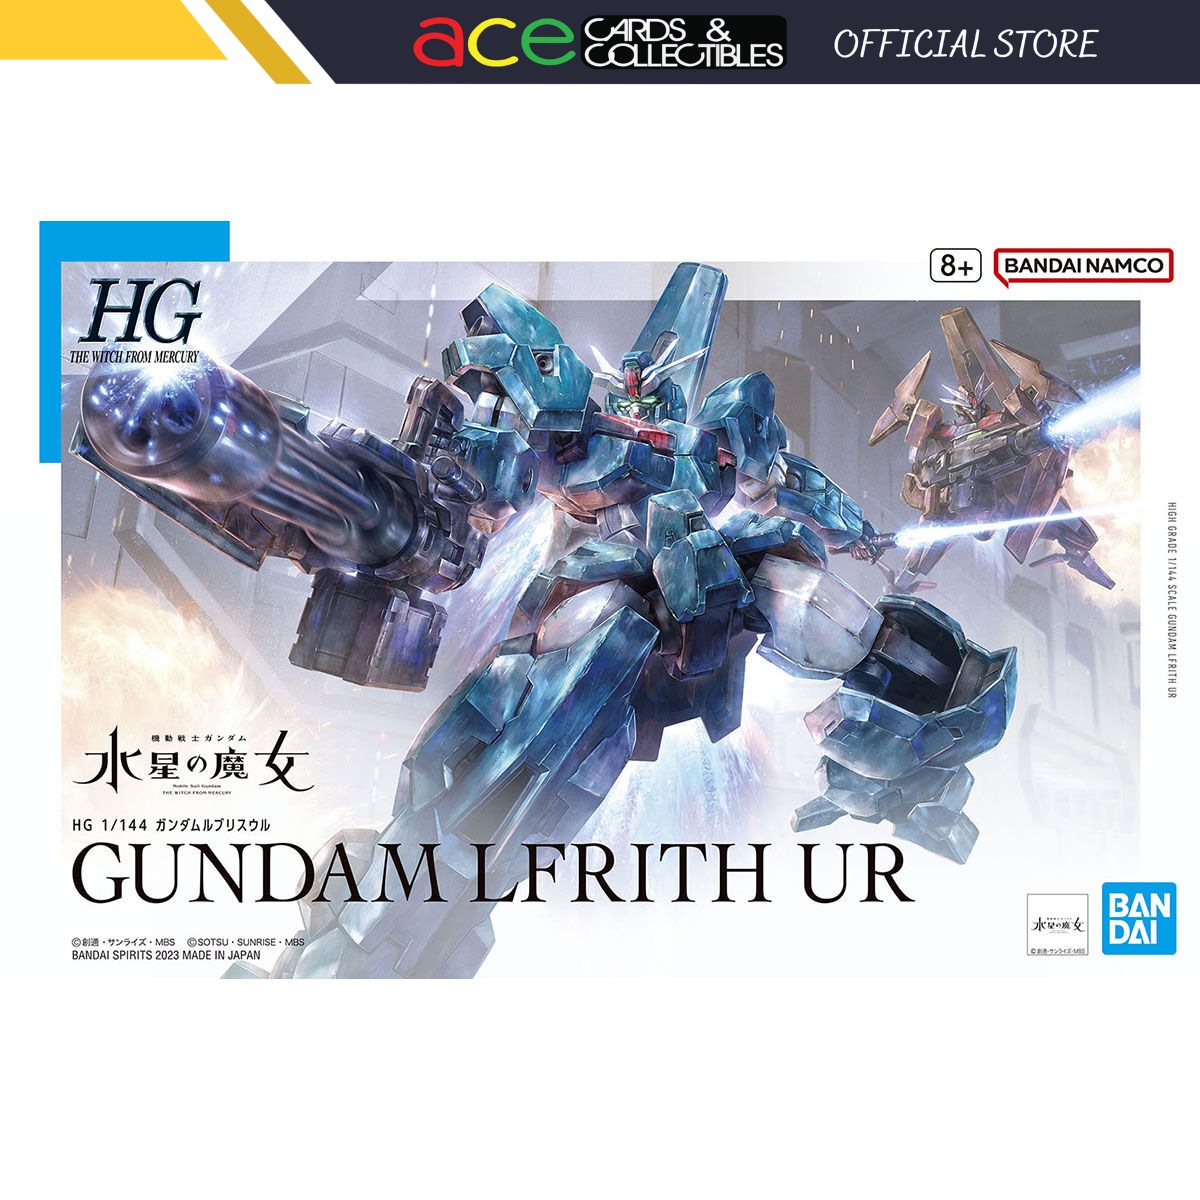 HG 1/144 Gundam "Lfrith UR"-Bandai-Ace Cards & Collectibles